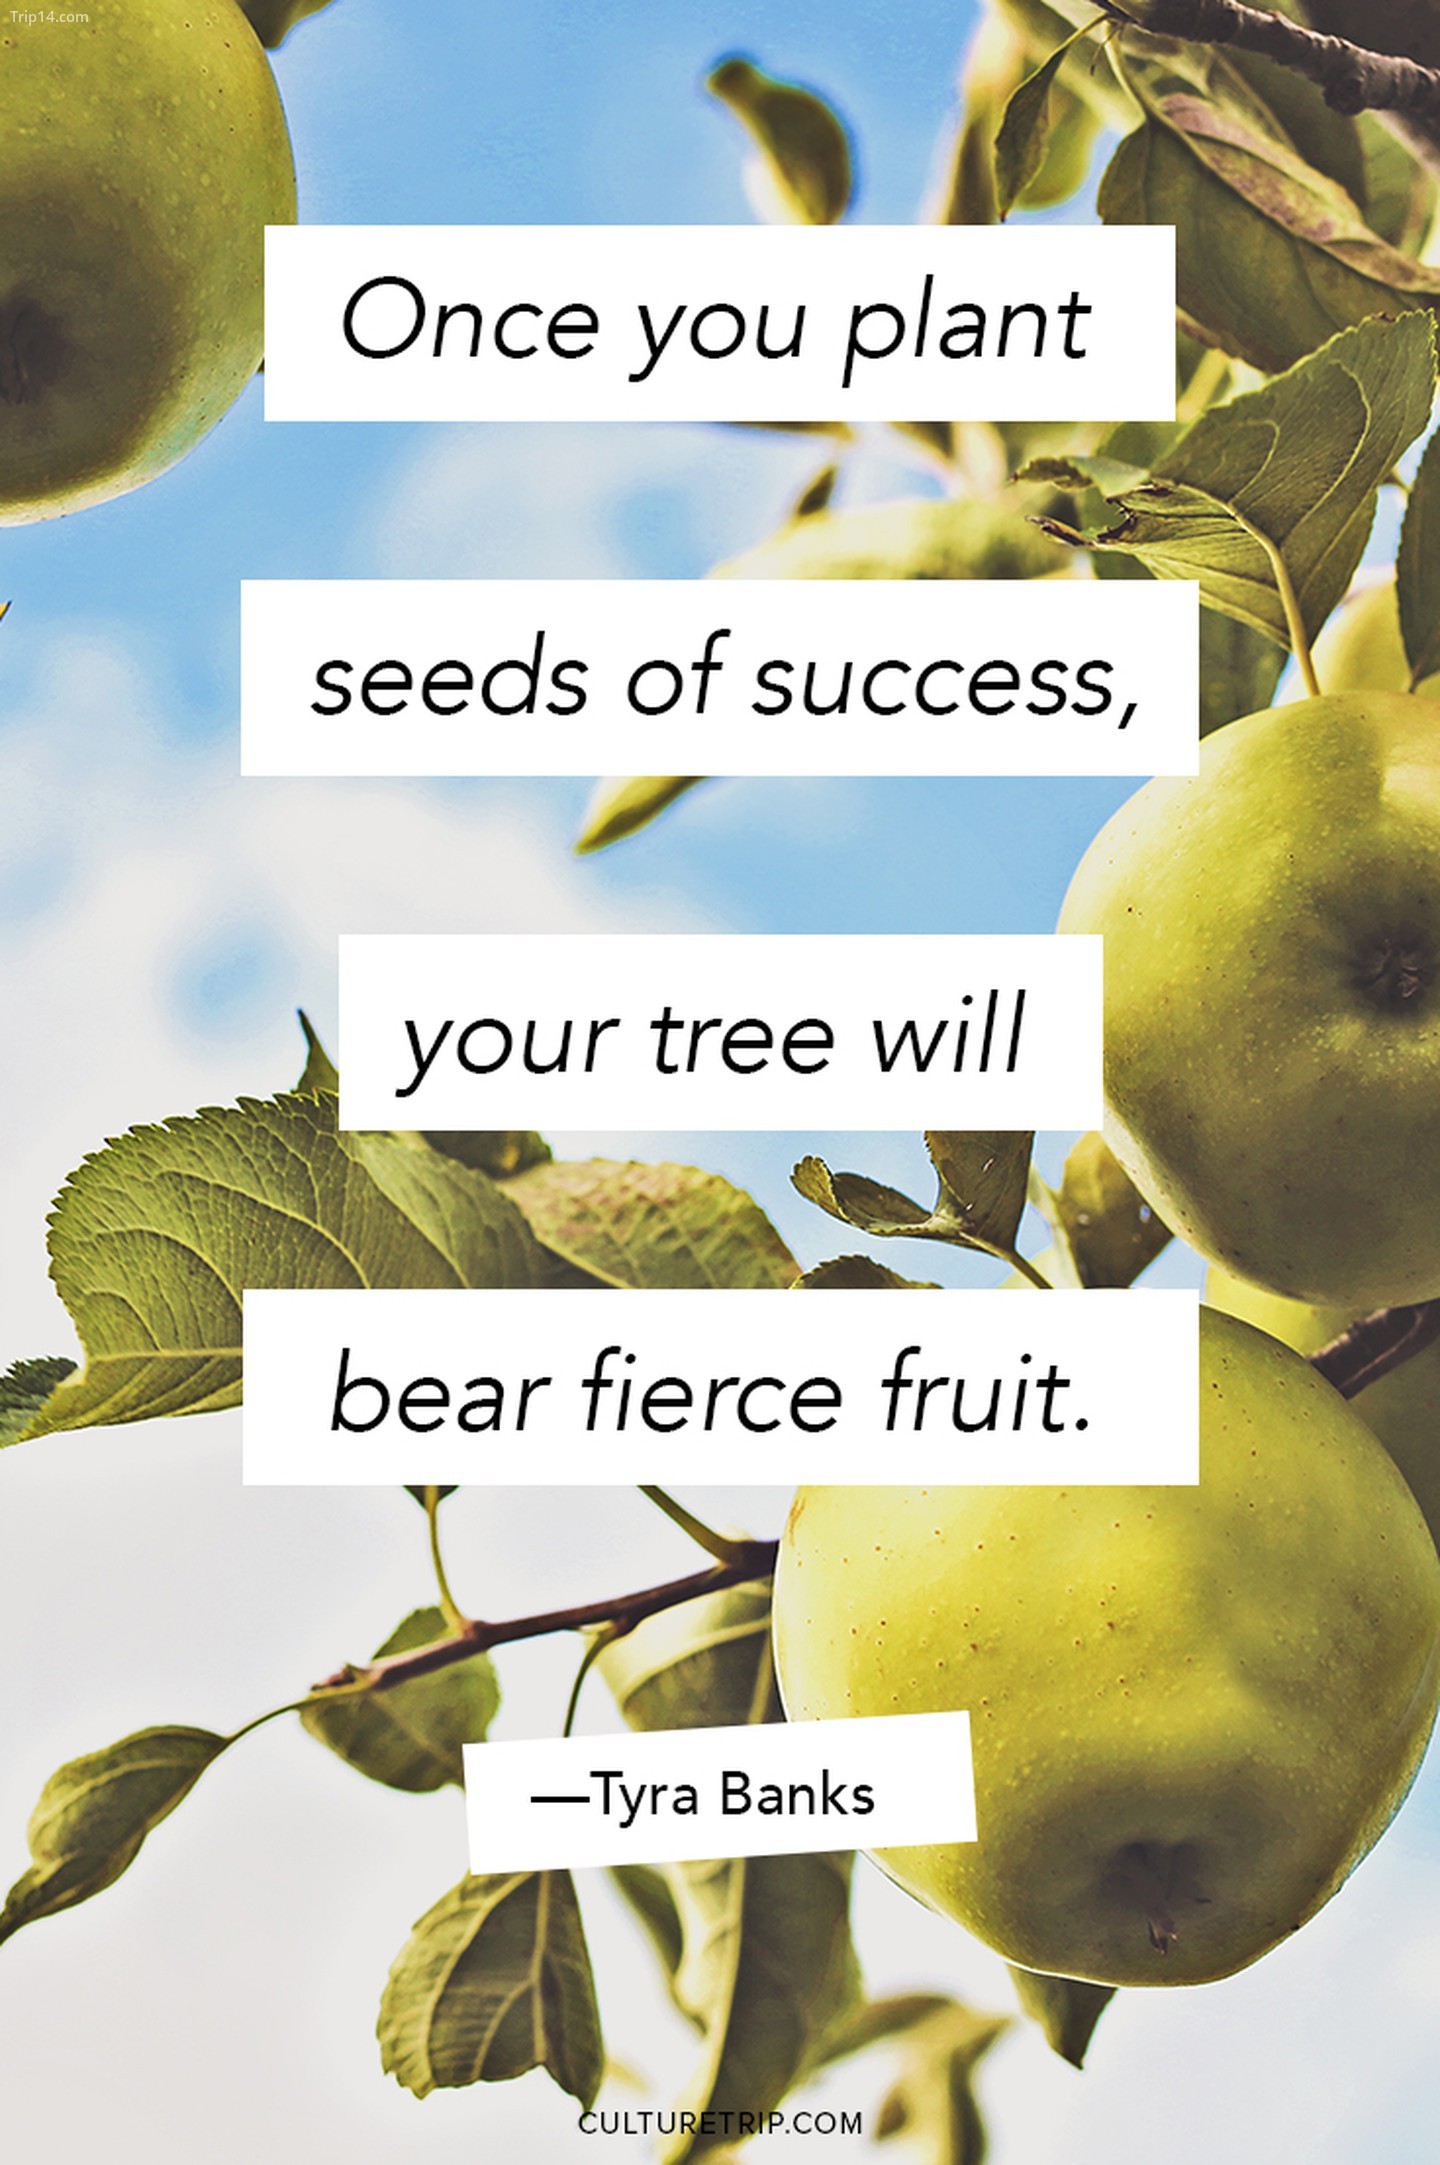 Một khi bạn gieo những hạt giống thành công, cây của bạn sẽ đơm hoa kết trái.